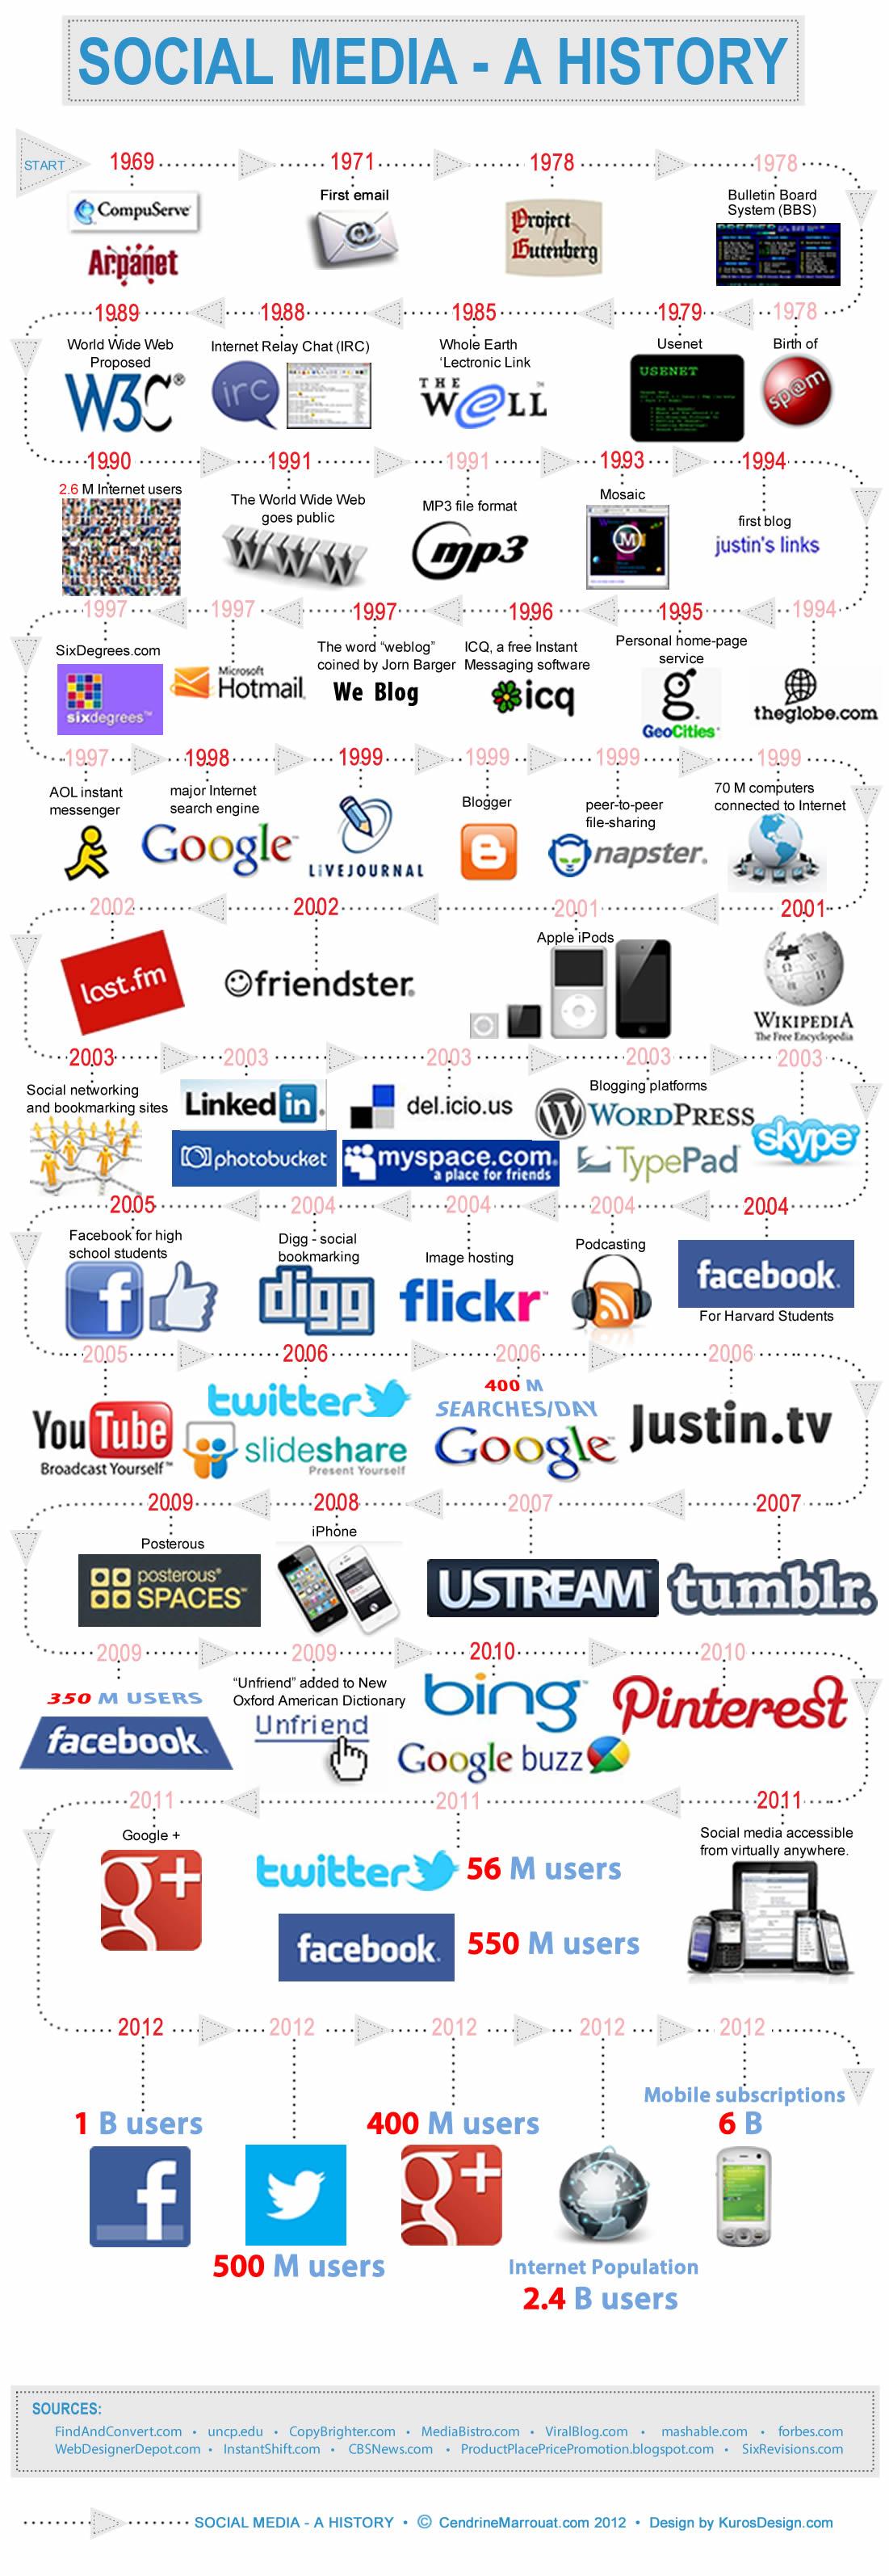 Historia de las redes sociales #Infografía #SocialMedia #Historia #Evolución